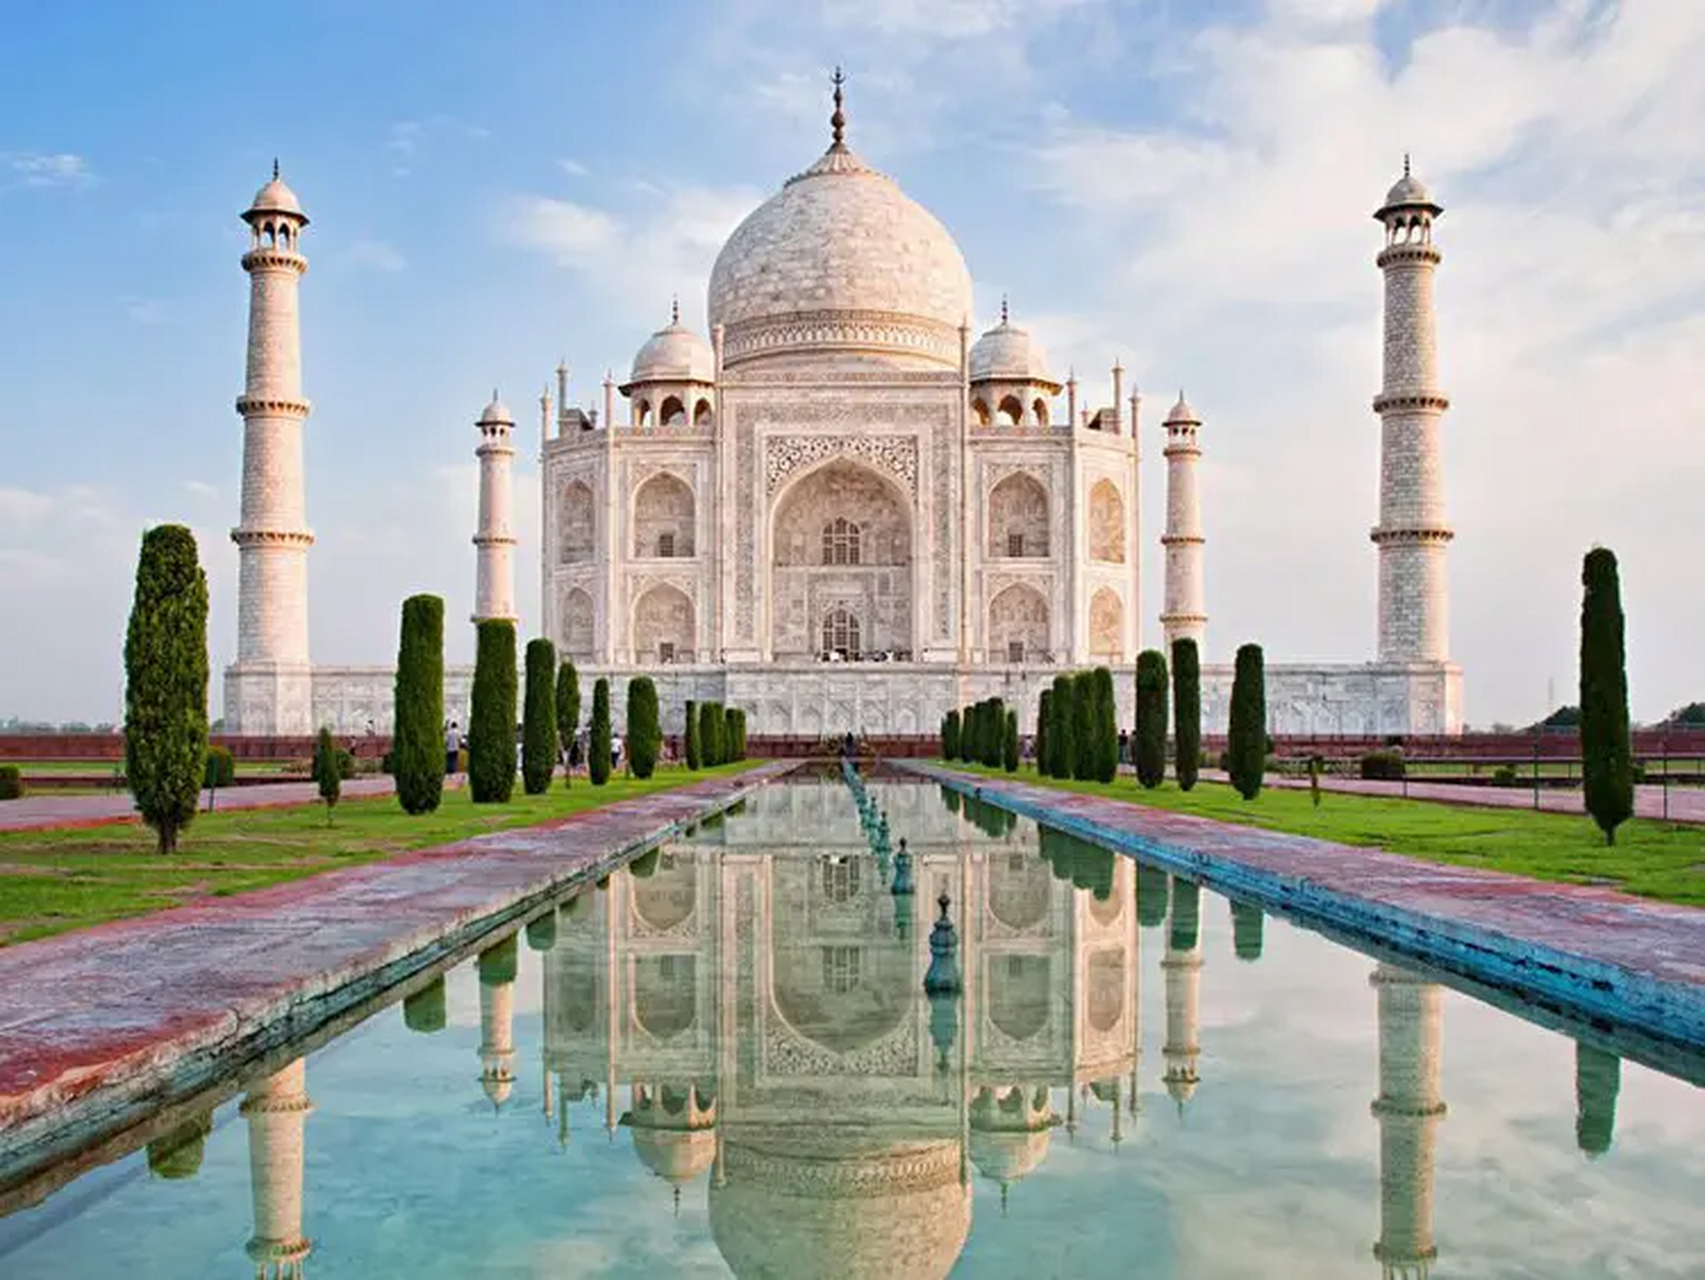 印度泰姬陵是世界上最著名的建筑之一,也是印度最具代表性的文化